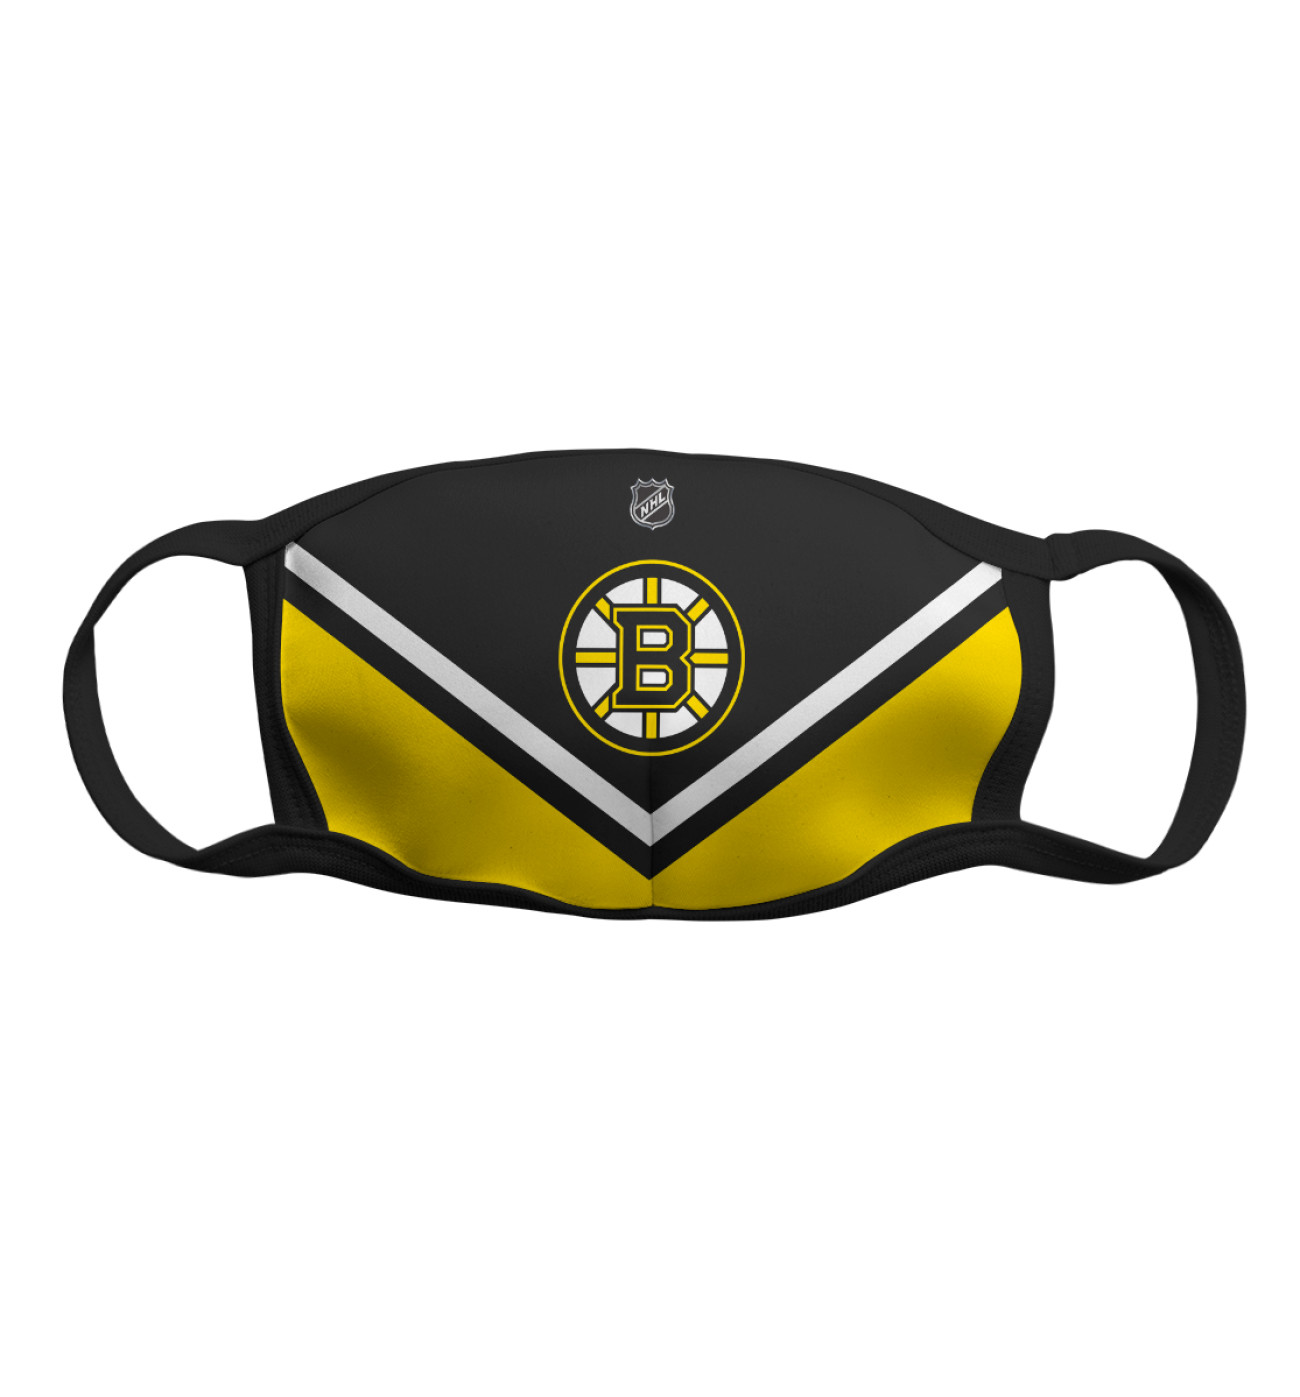 Мужская Маска Boston Bruins, артикул: HOK-473620-msk-2